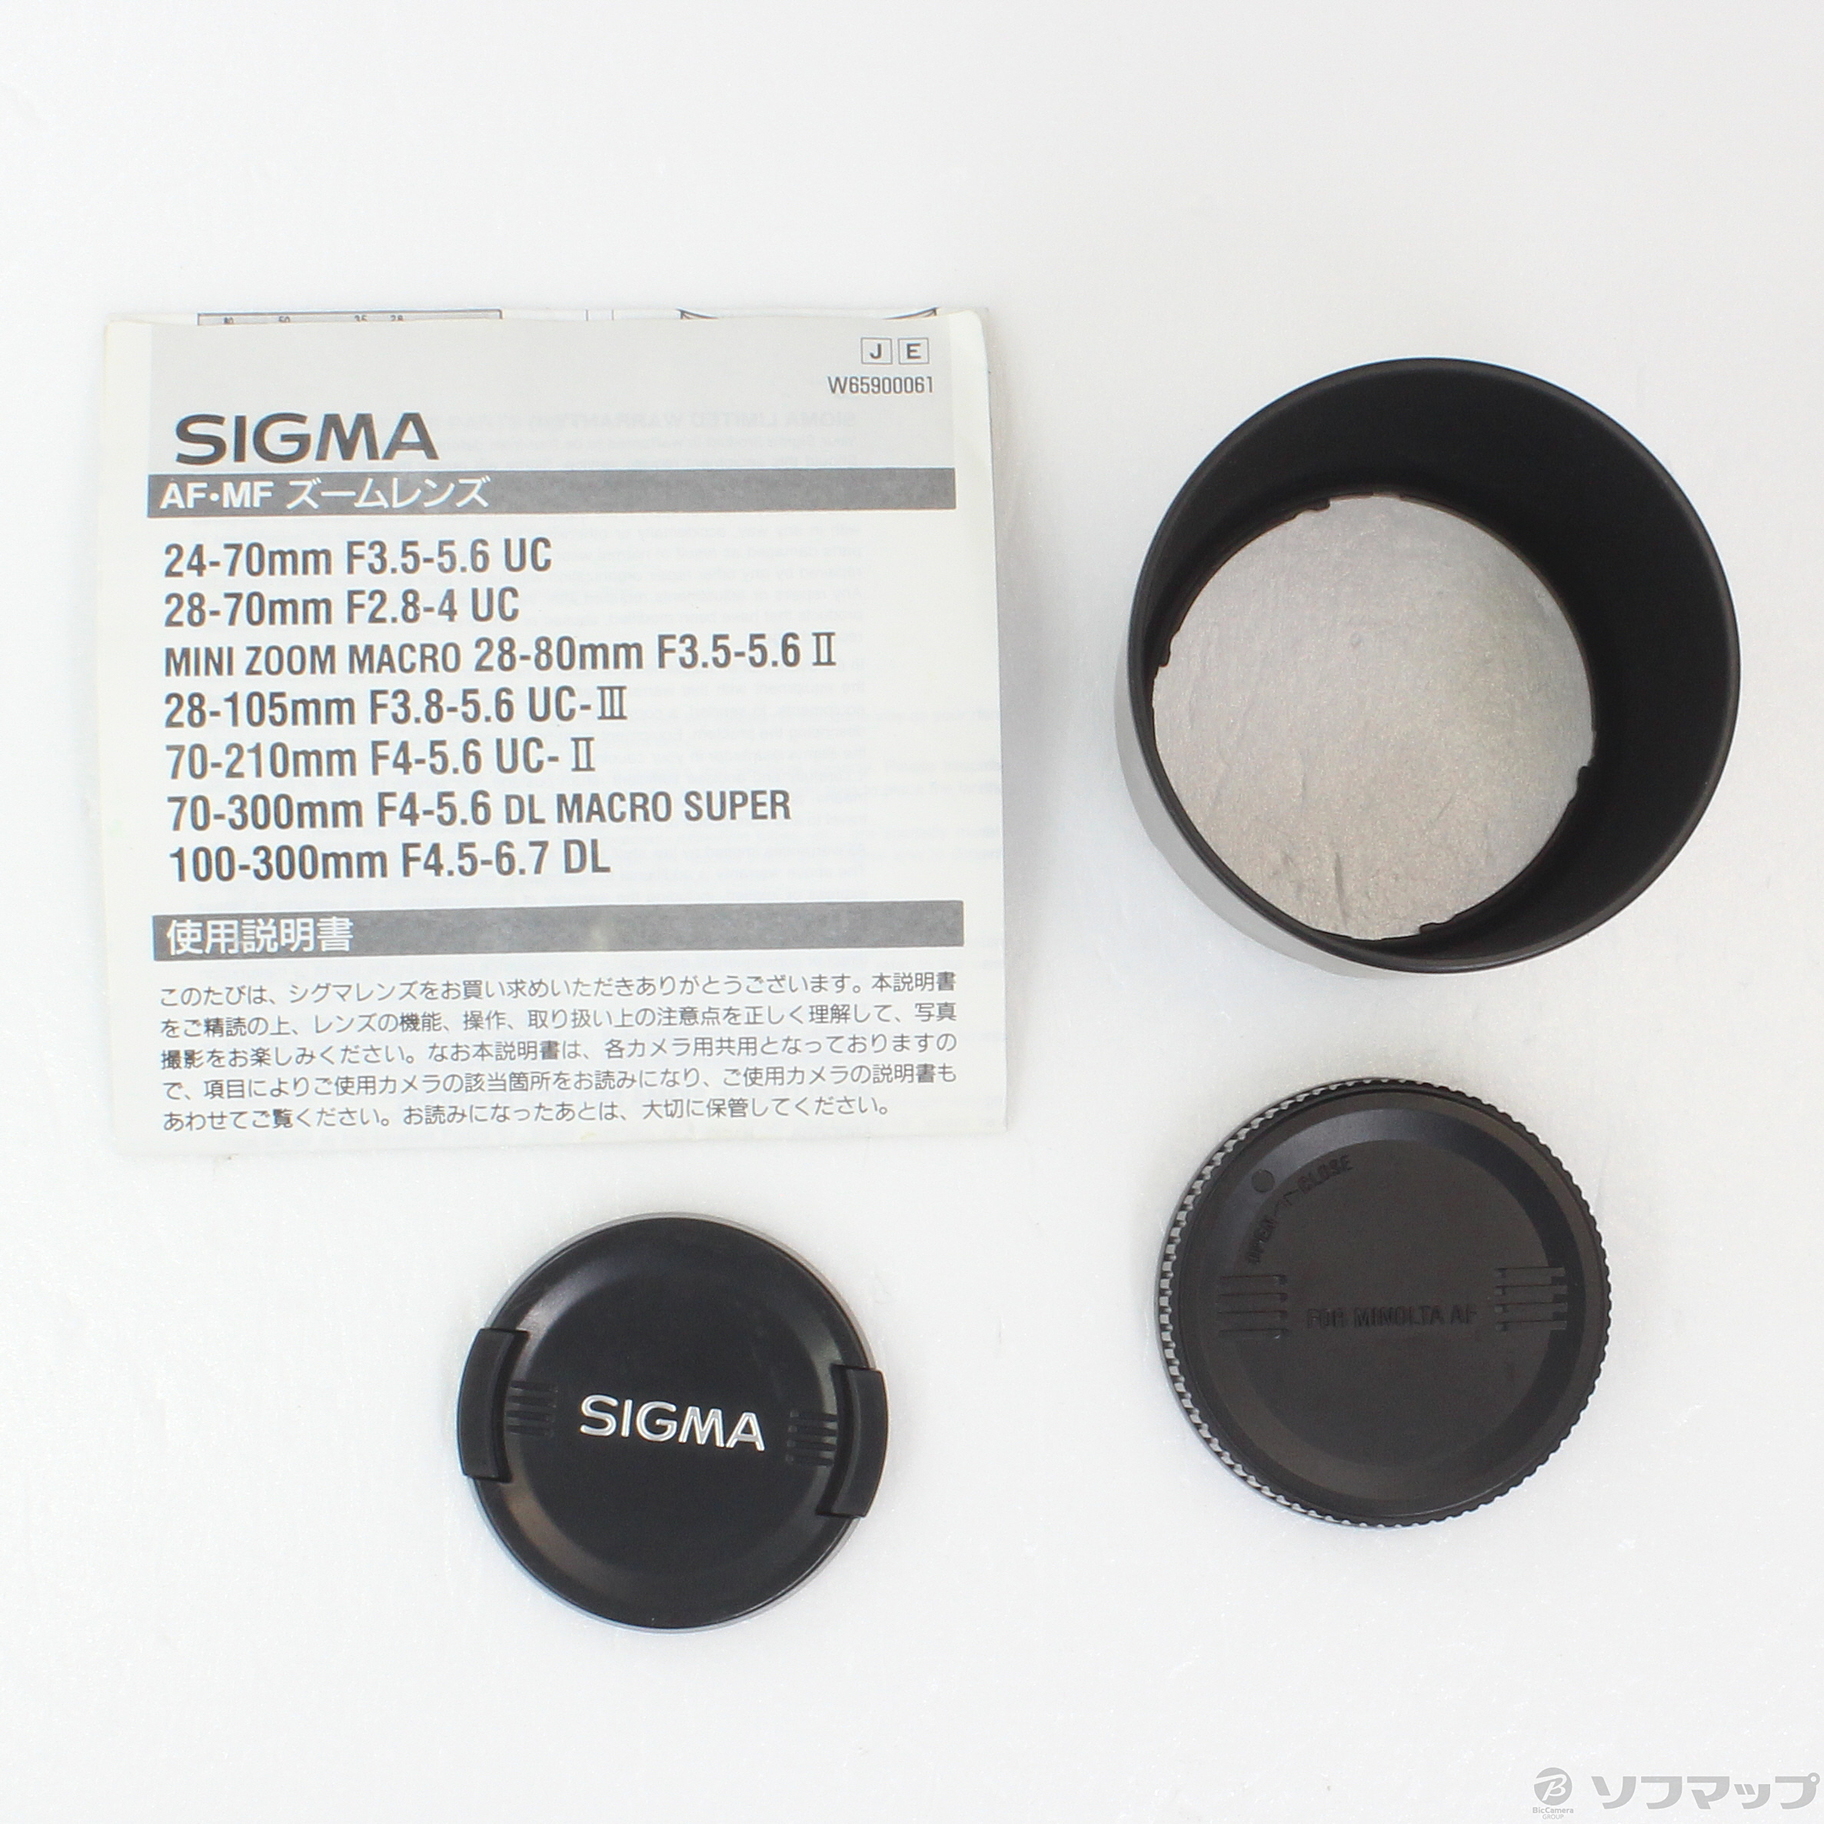 SIGMA AF-MF ZOOM LENS 100-300mm F4.5-6.7 - レンズ(ズーム)